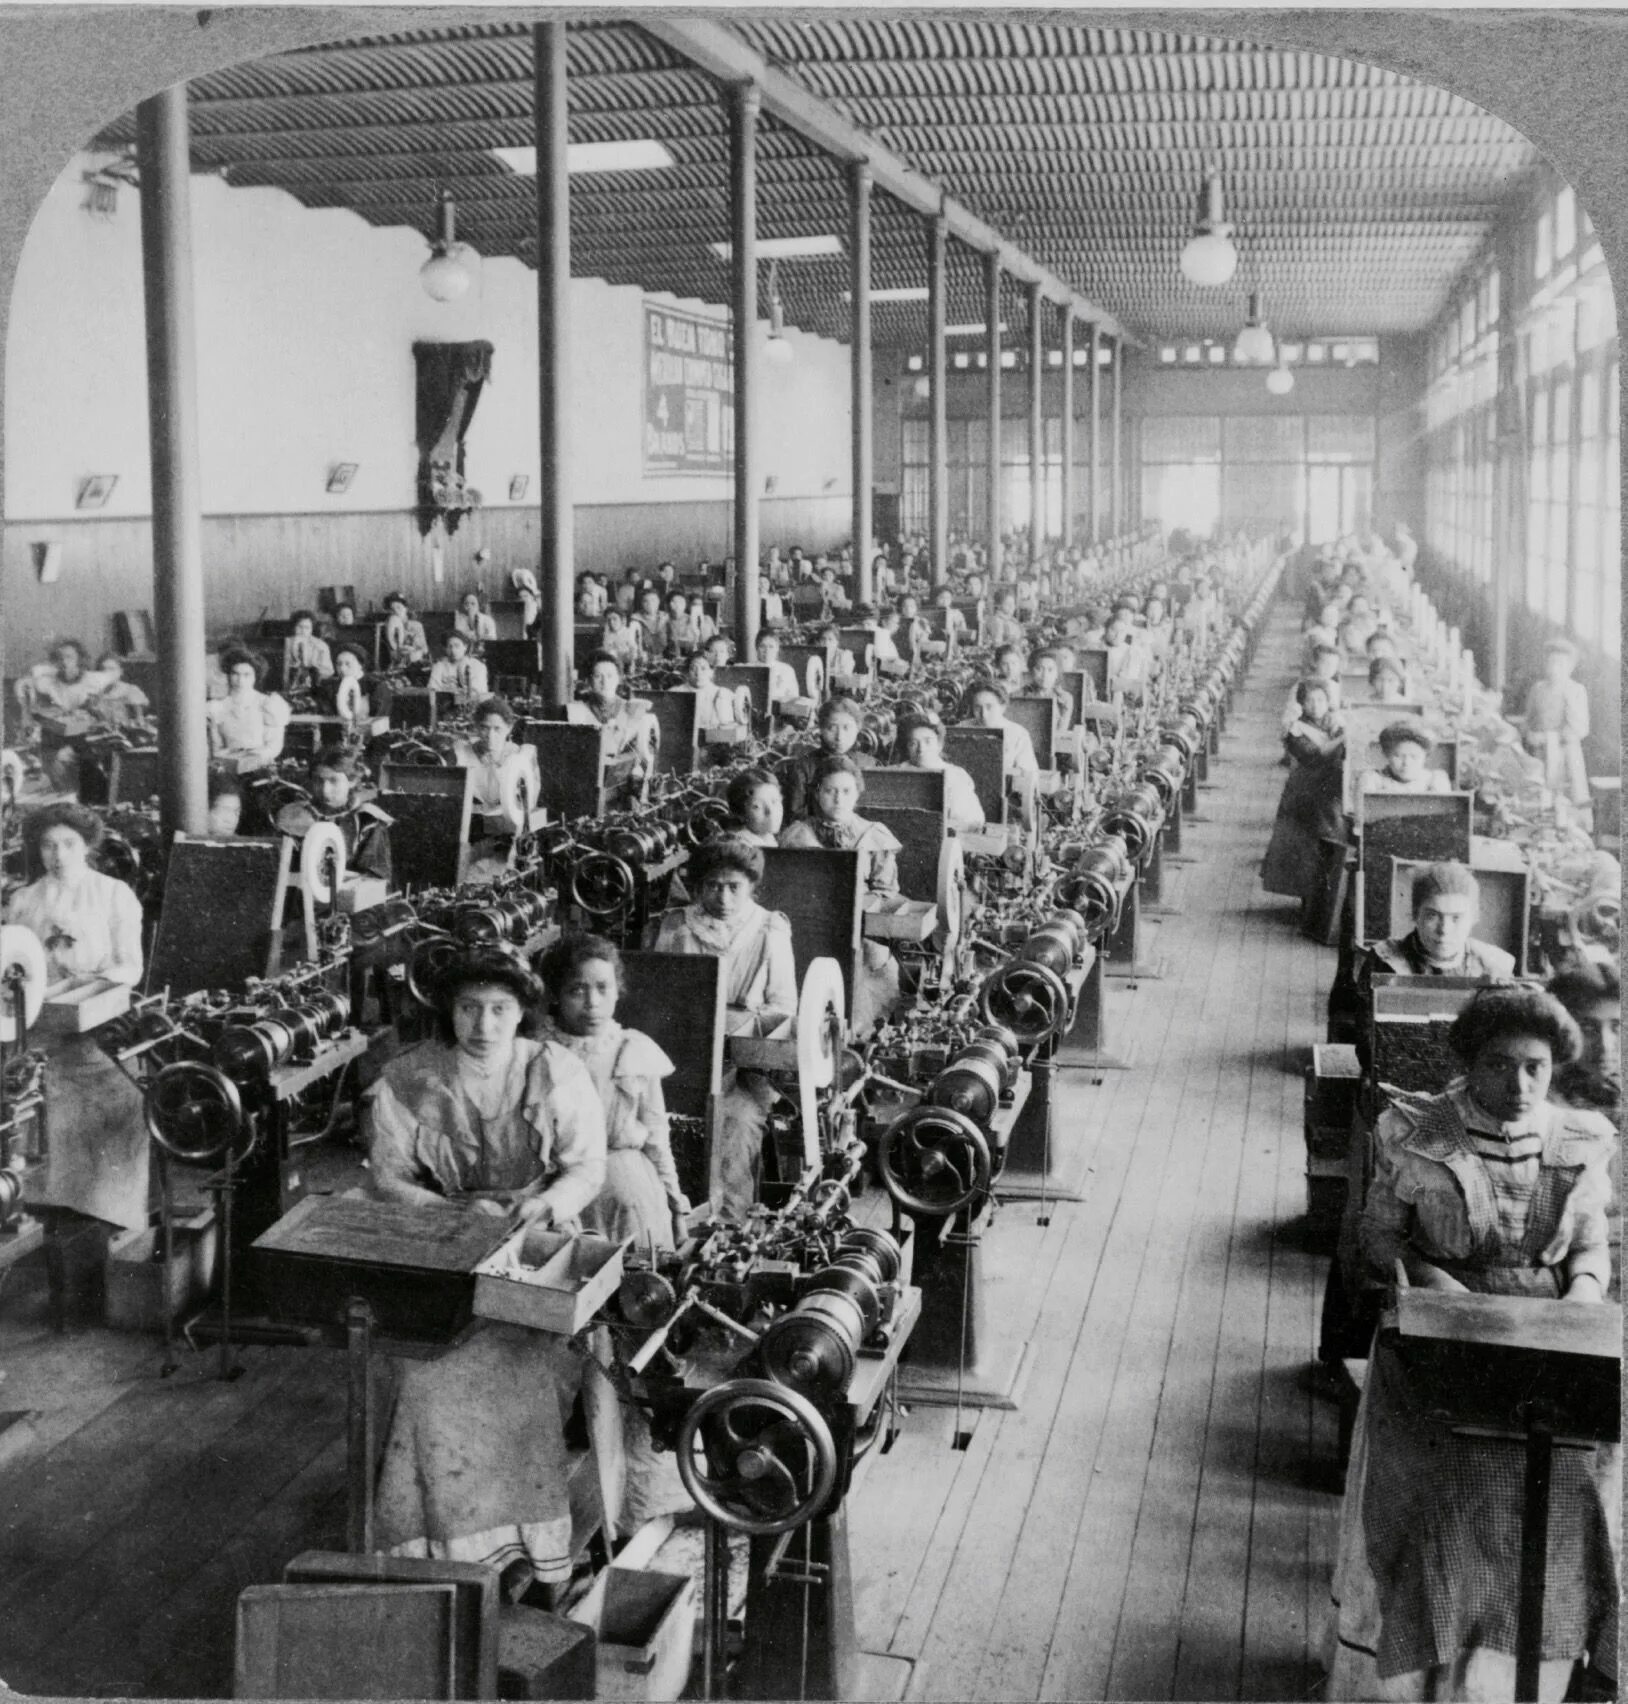 Завод начало 20 века. Табачная фабрика в Испании 19 век. Первая сигаретная фабрика в Лондоне 19 век. Табачная фабрика в 19 веке в России. Фабрика в начале 20 века в США.